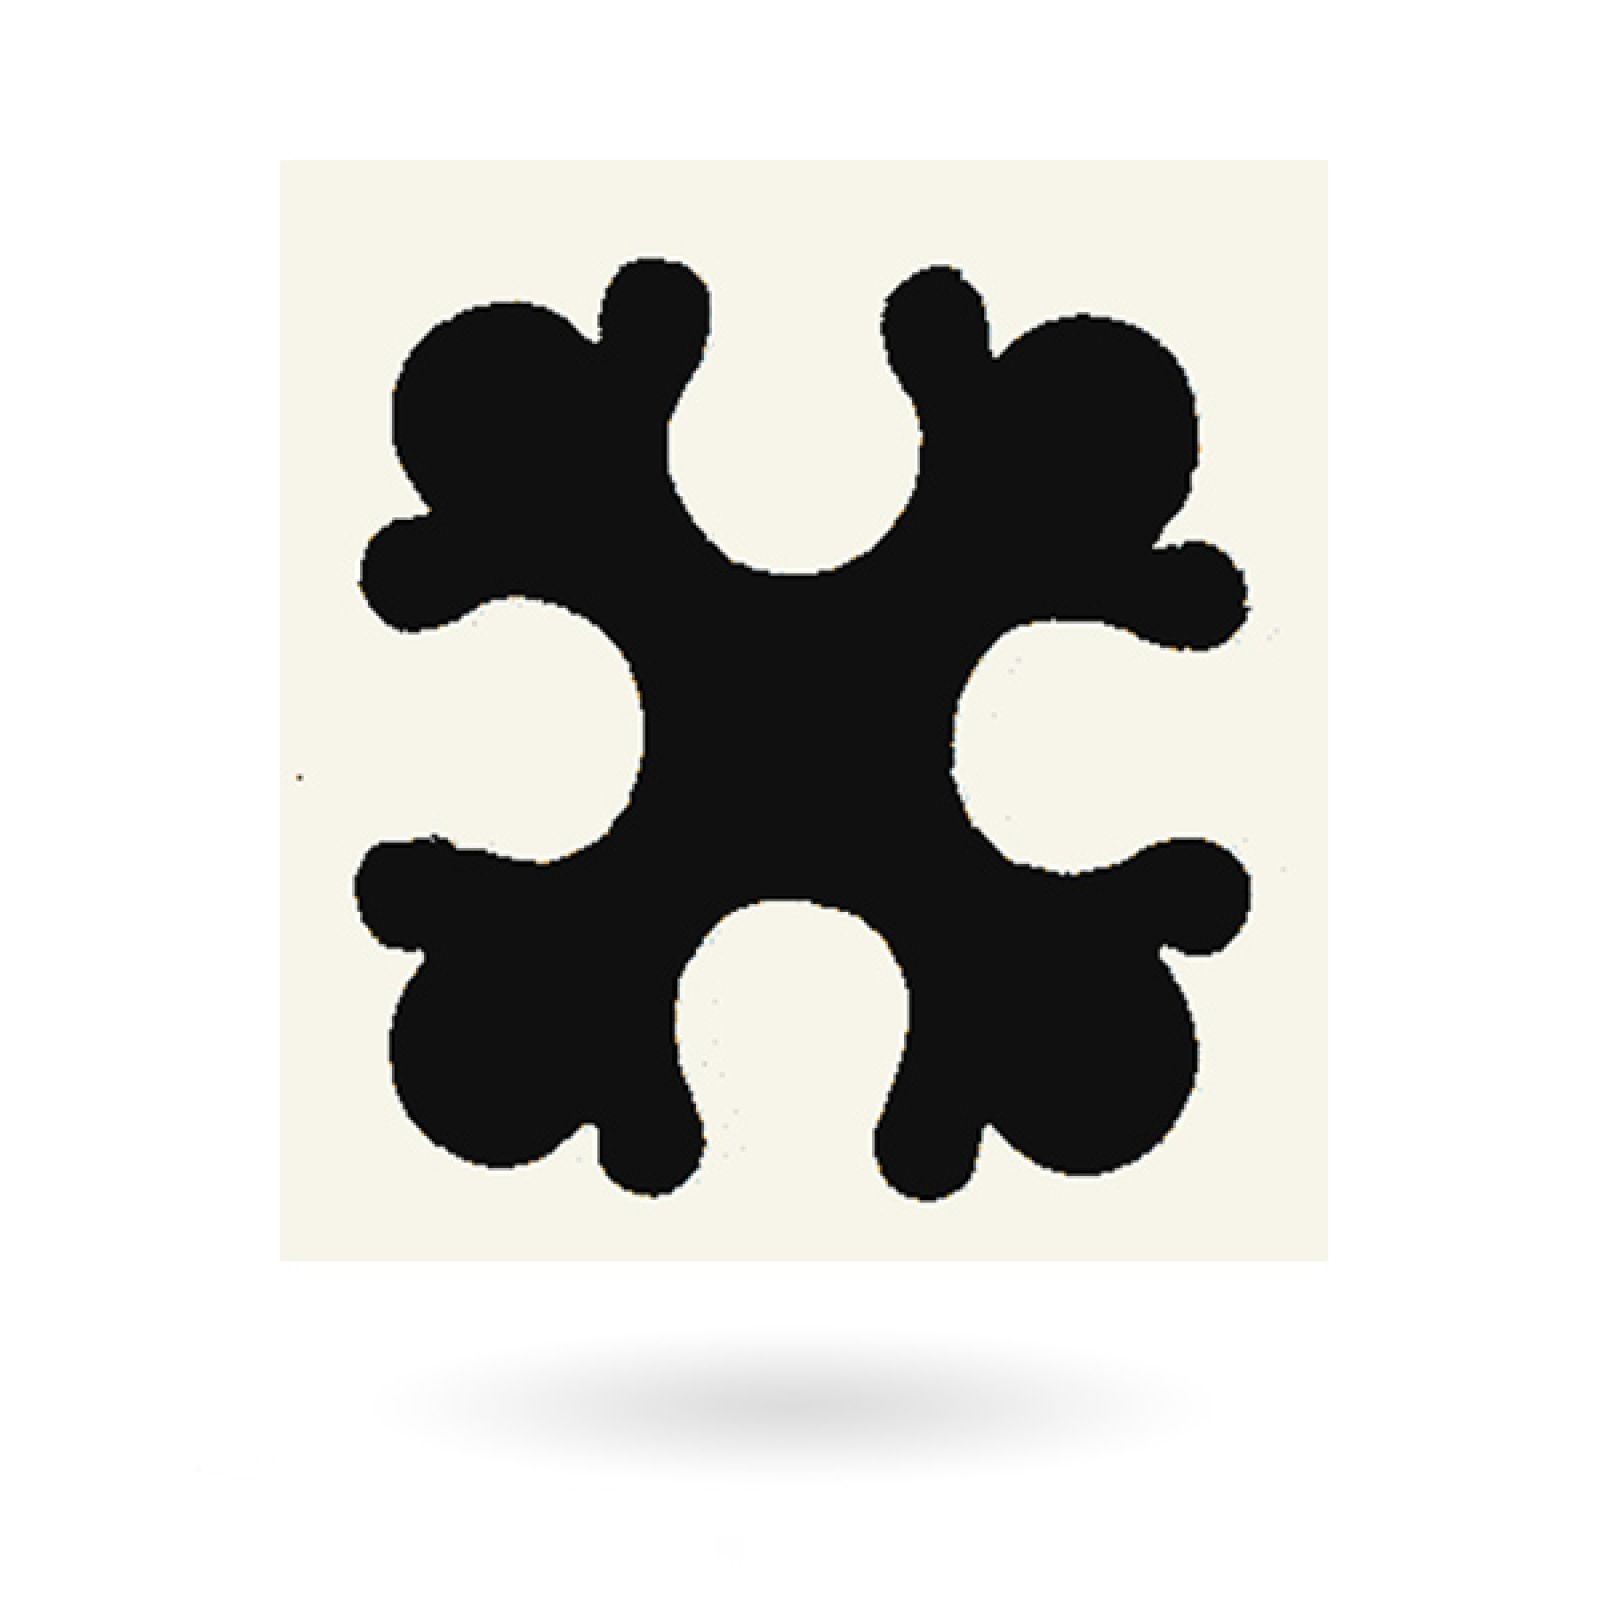 Encaustic 2.25” square tile - design 15